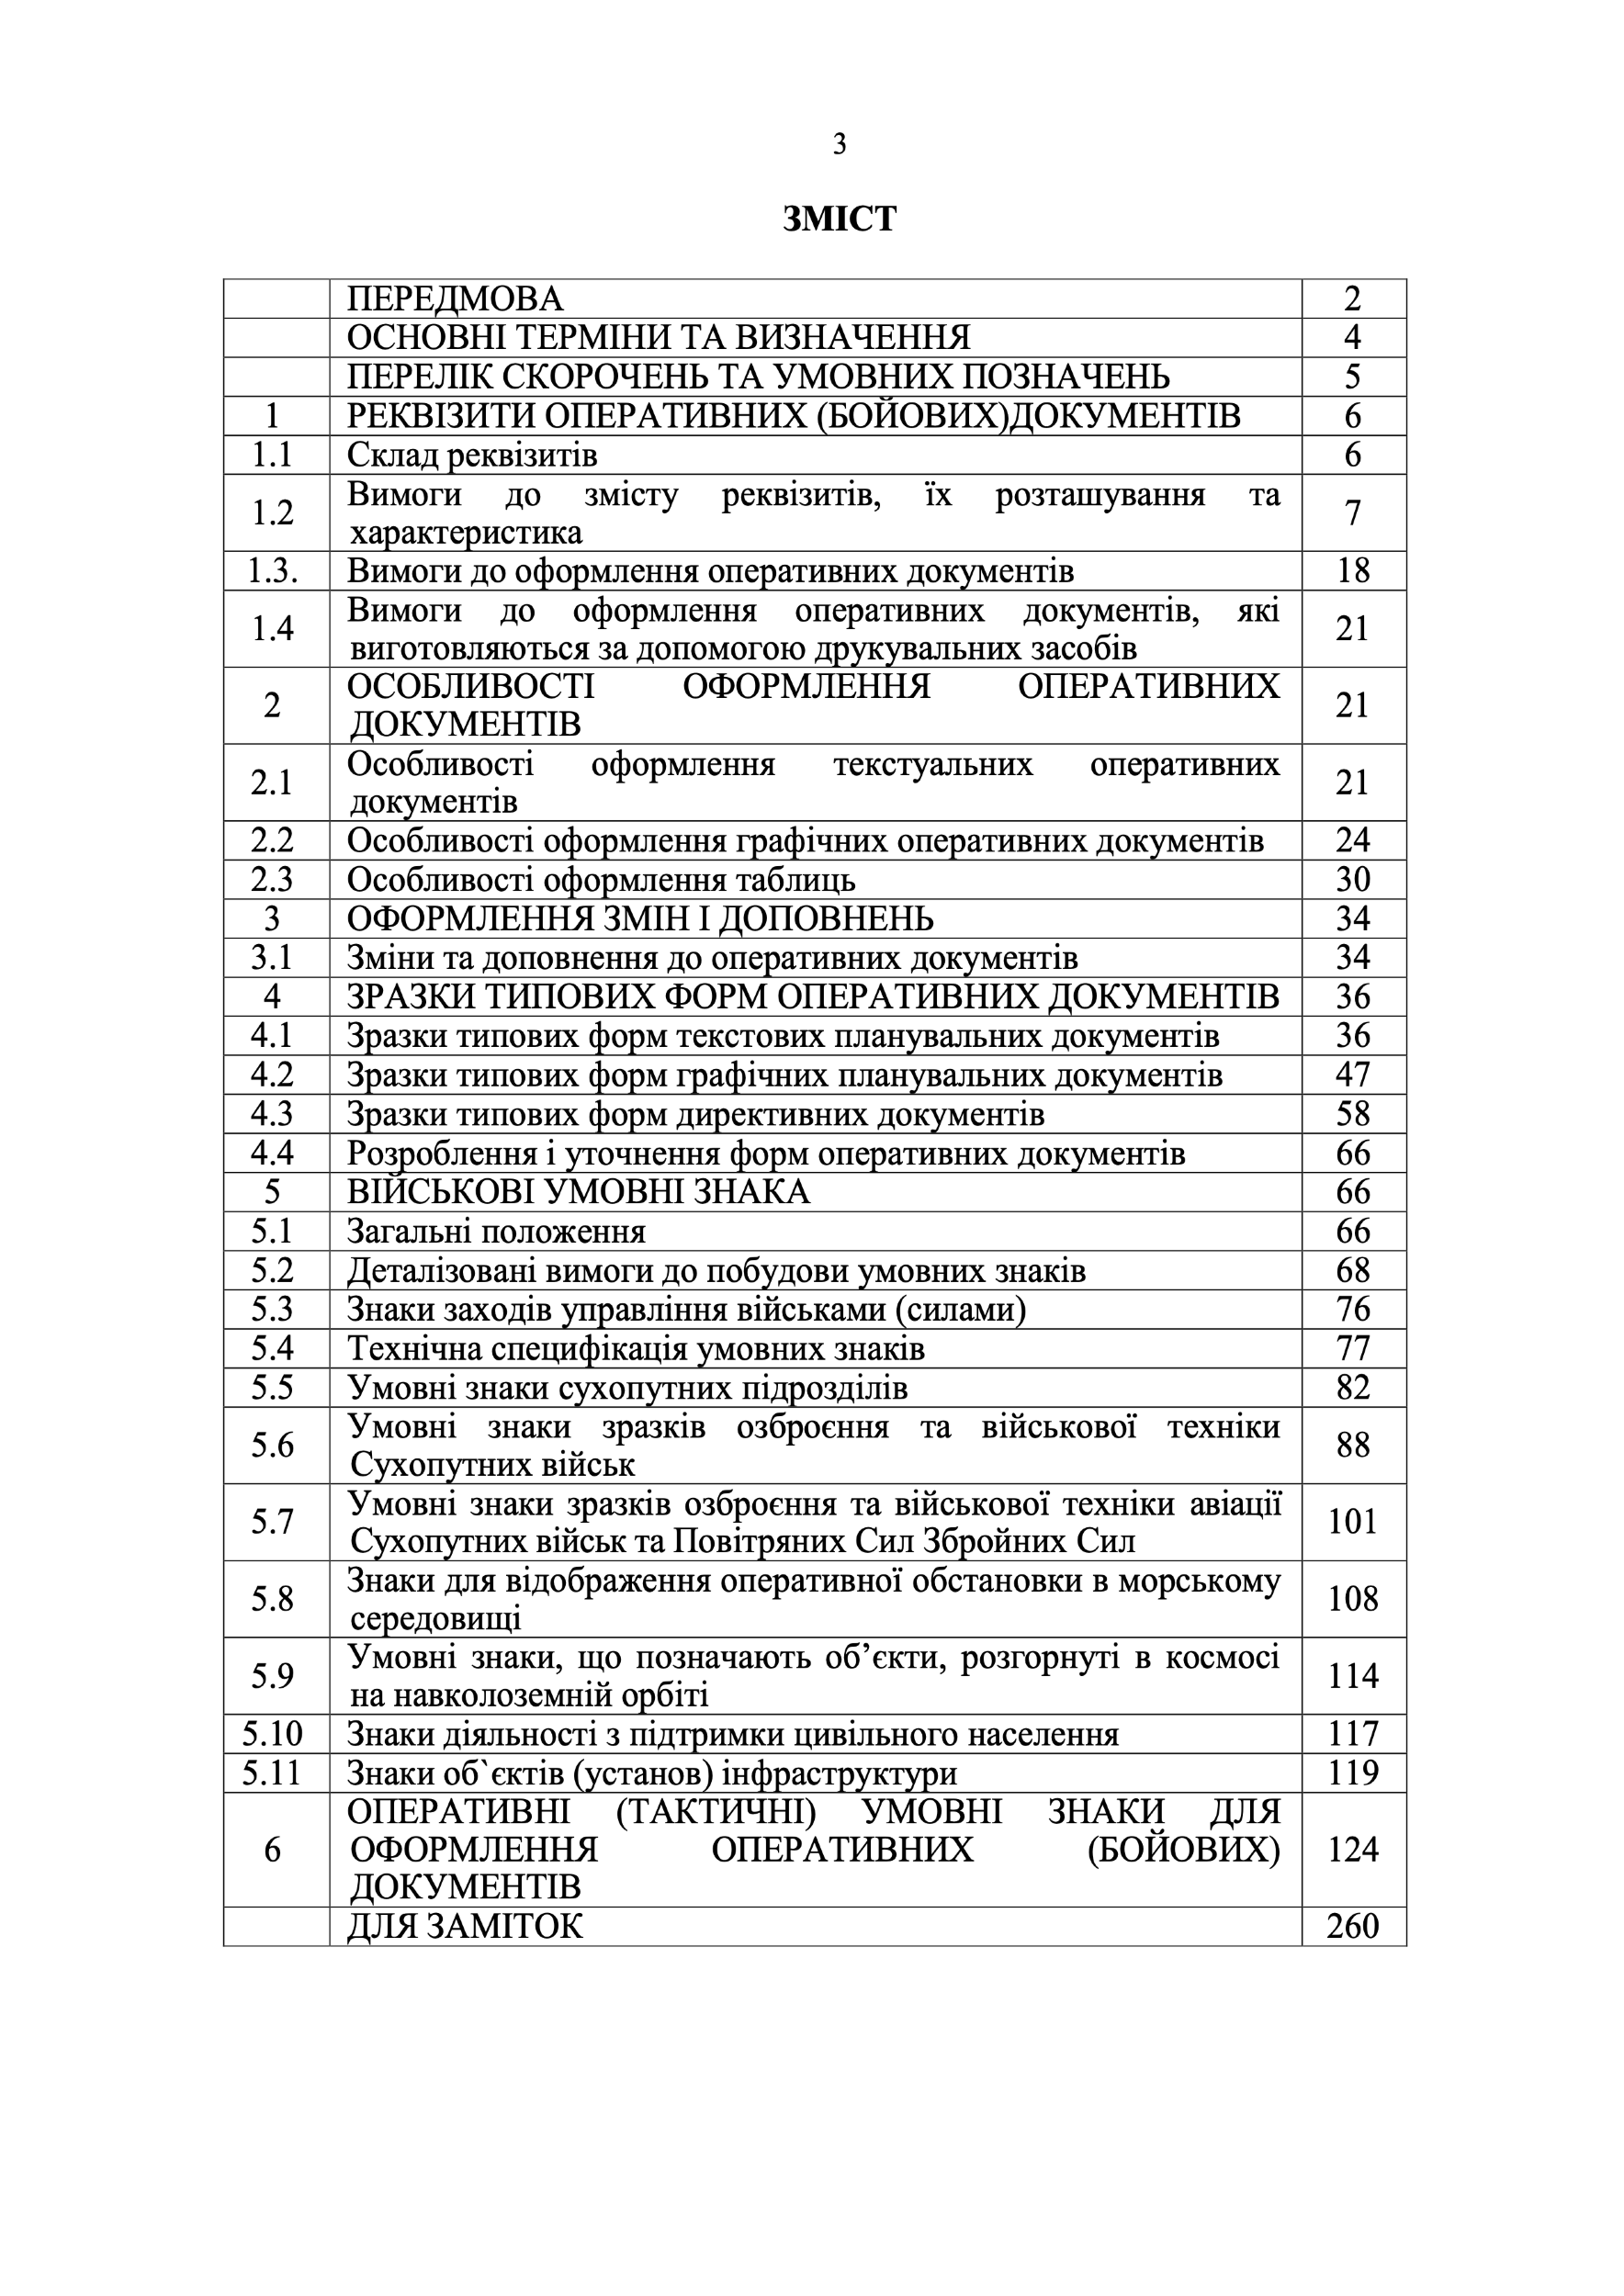 Наказ ГК № 140 — Тимчасовий порядок оформлення оперативних (бойових) документів. Автор — Головнокомандувач ЗСУ. 